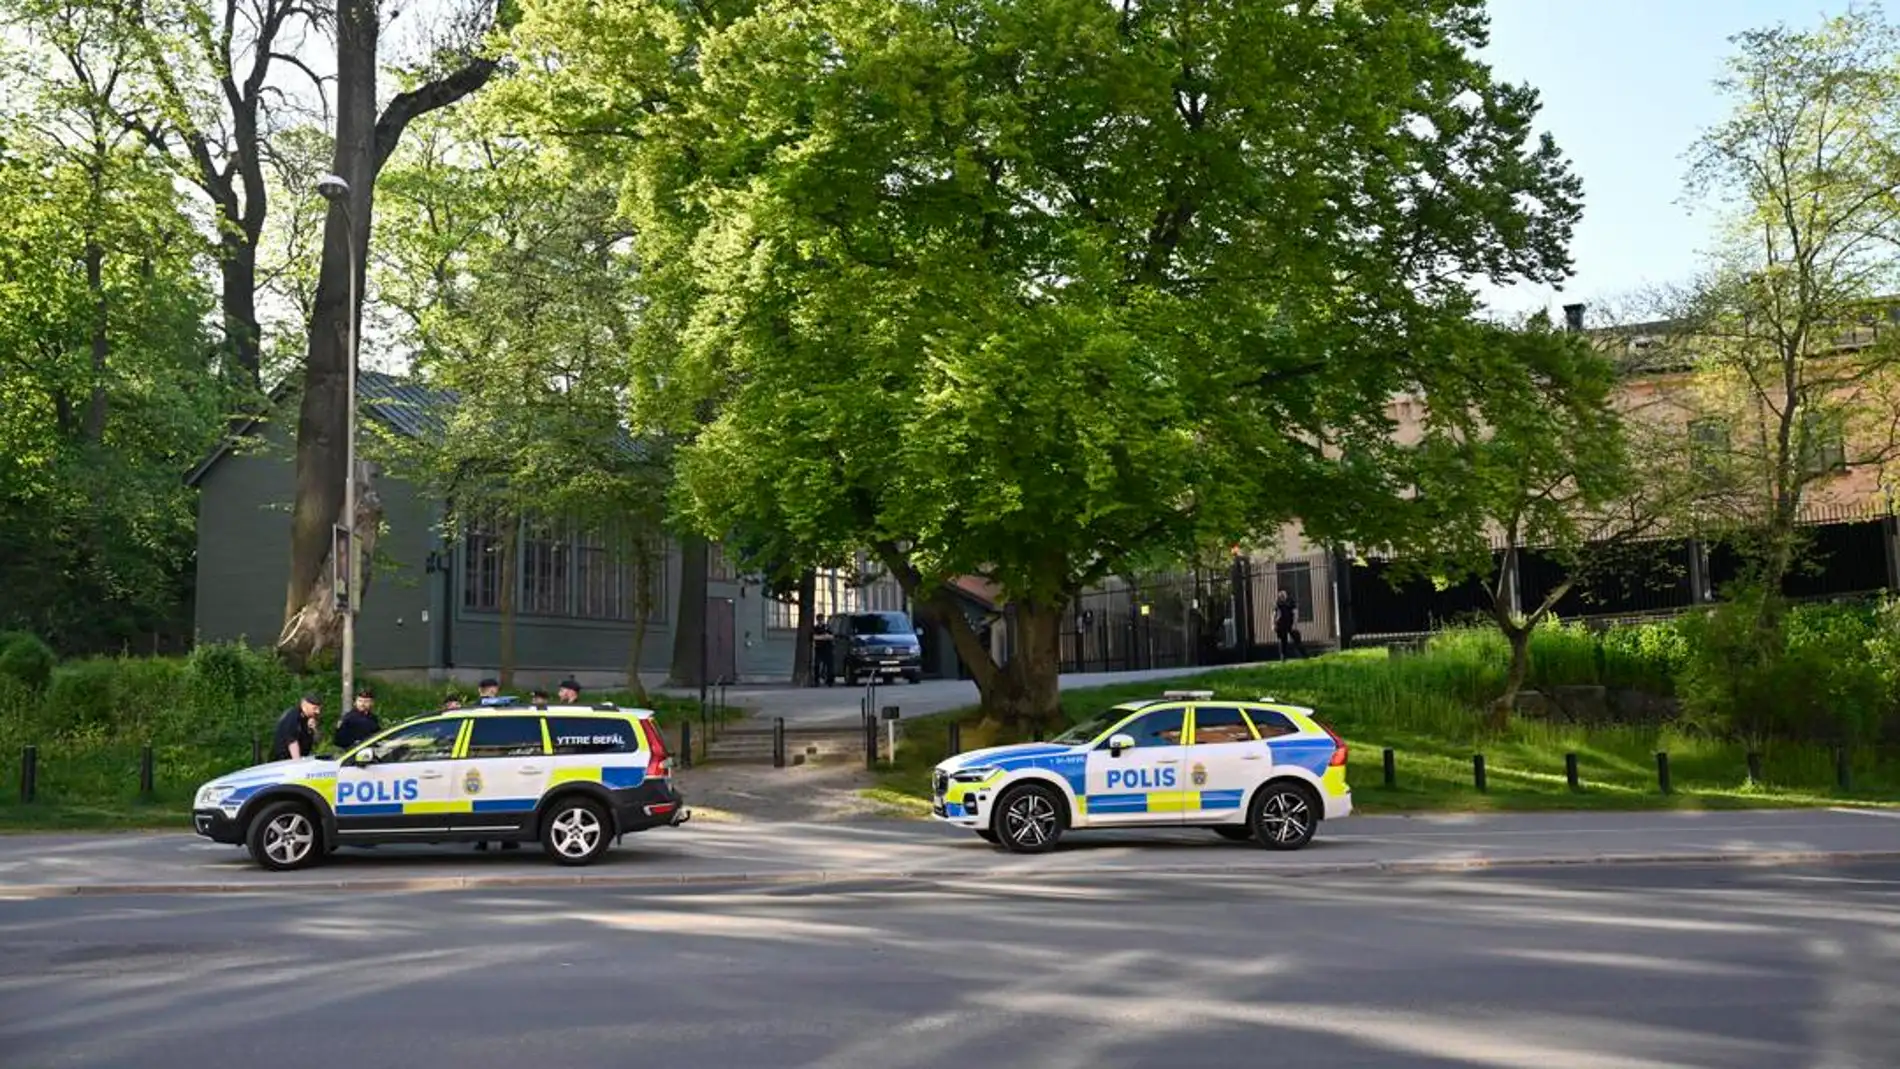 Un posible tiroteo cerca de la embajada de Israel en Estocolmo obliga a acordonar la zona